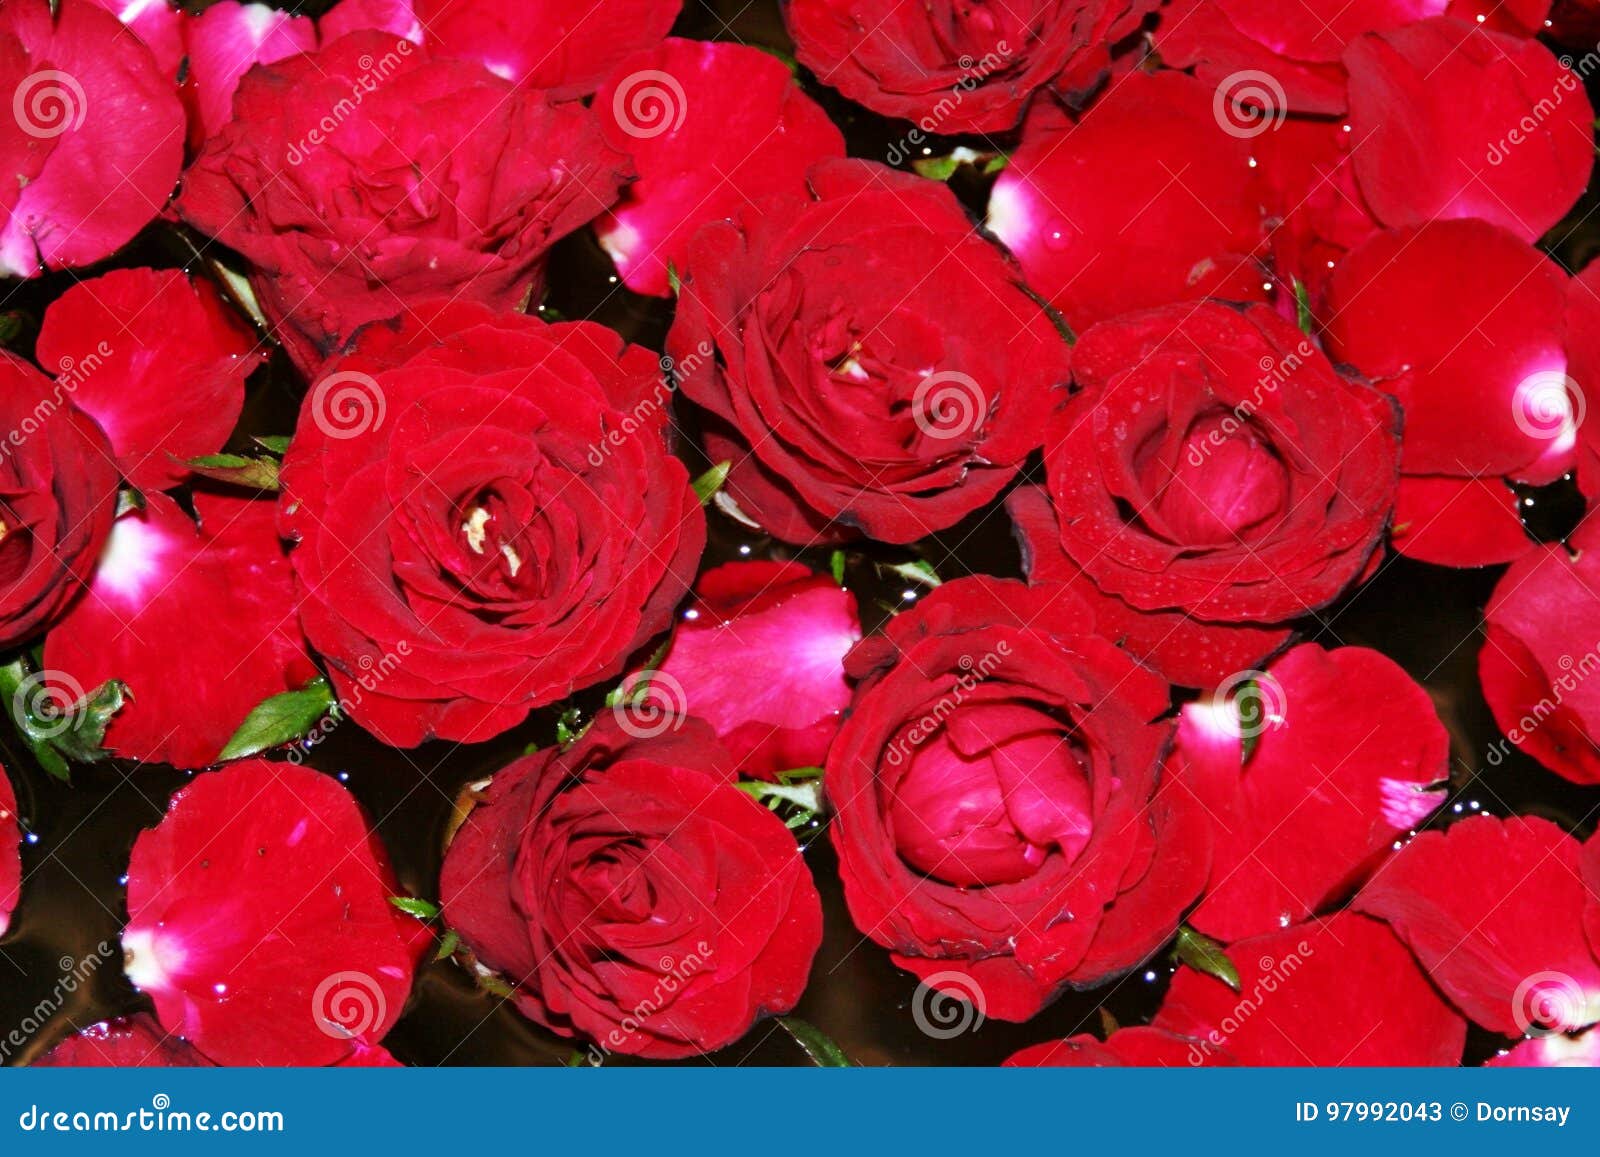 De rode rozenachtergrond vertegenwoordigt de diversiteit van liefde